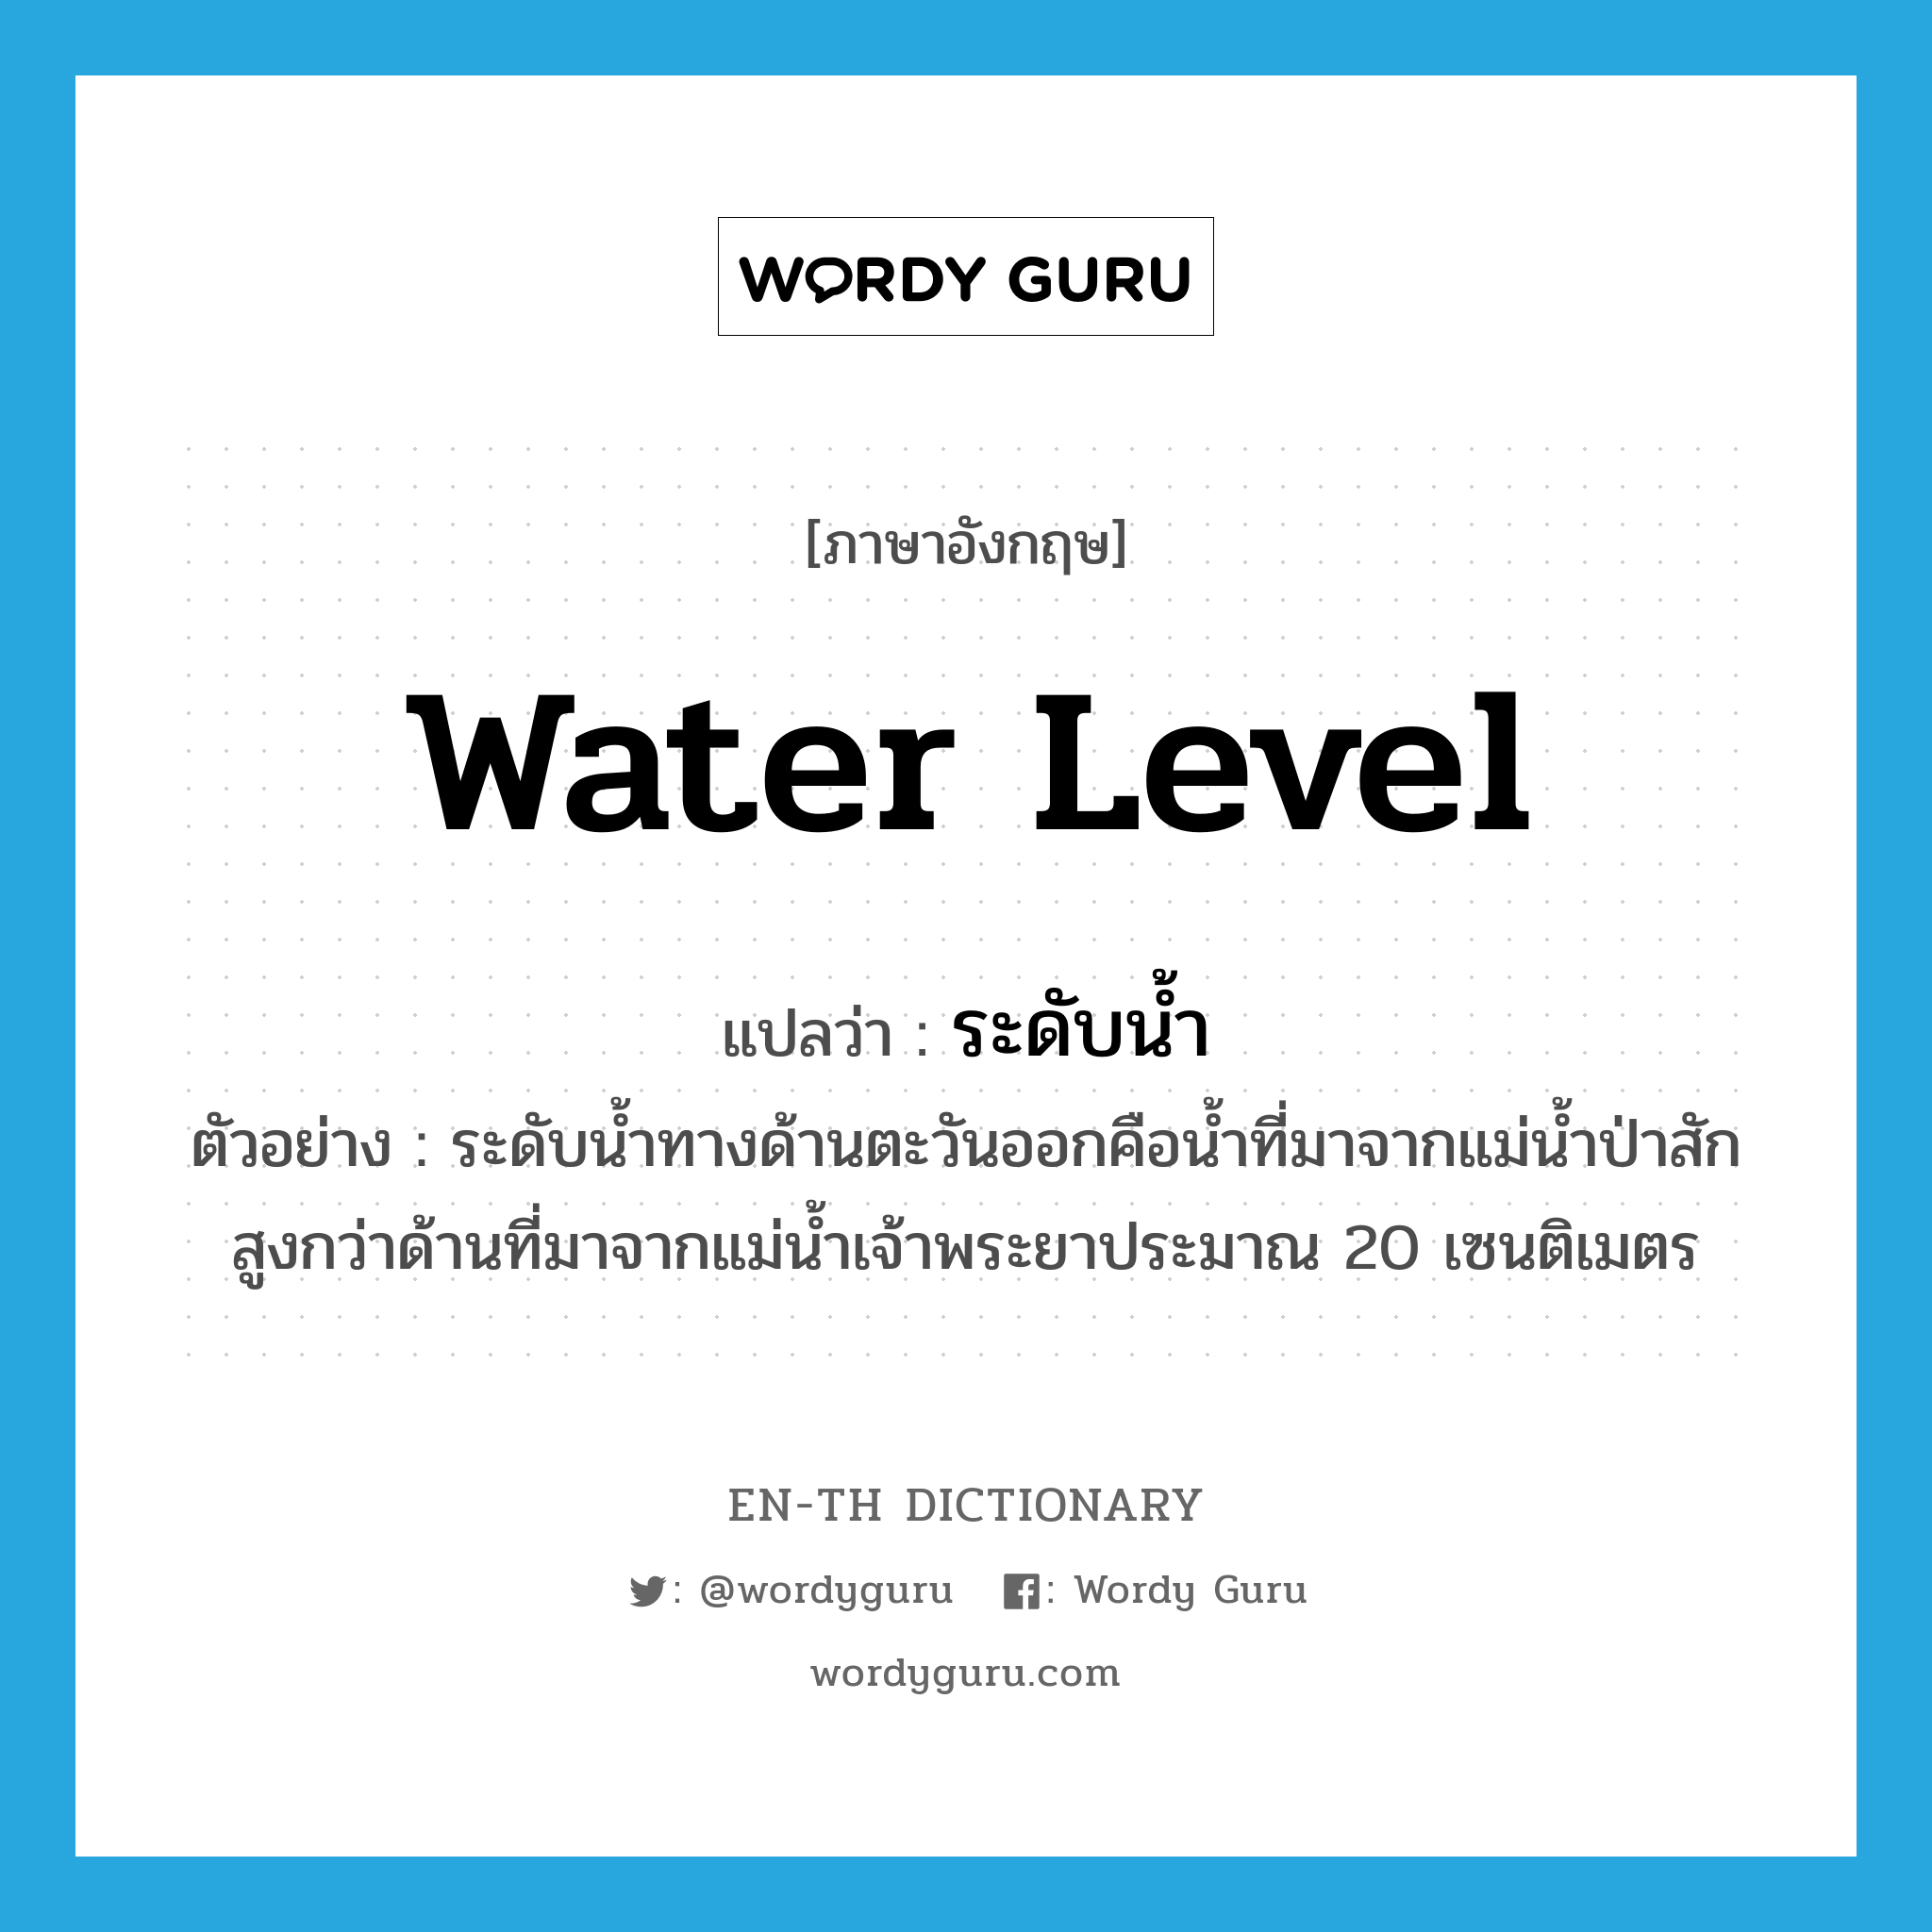 water level แปลว่า?, คำศัพท์ภาษาอังกฤษ water level แปลว่า ระดับน้ำ ประเภท N ตัวอย่าง ระดับน้ำทางด้านตะวันออกคือน้ำที่มาจากแม่น้ำป่าสัก สูงกว่าด้านที่มาจากแม่น้ำเจ้าพระยาประมาณ 20 เซนติเมตร หมวด N